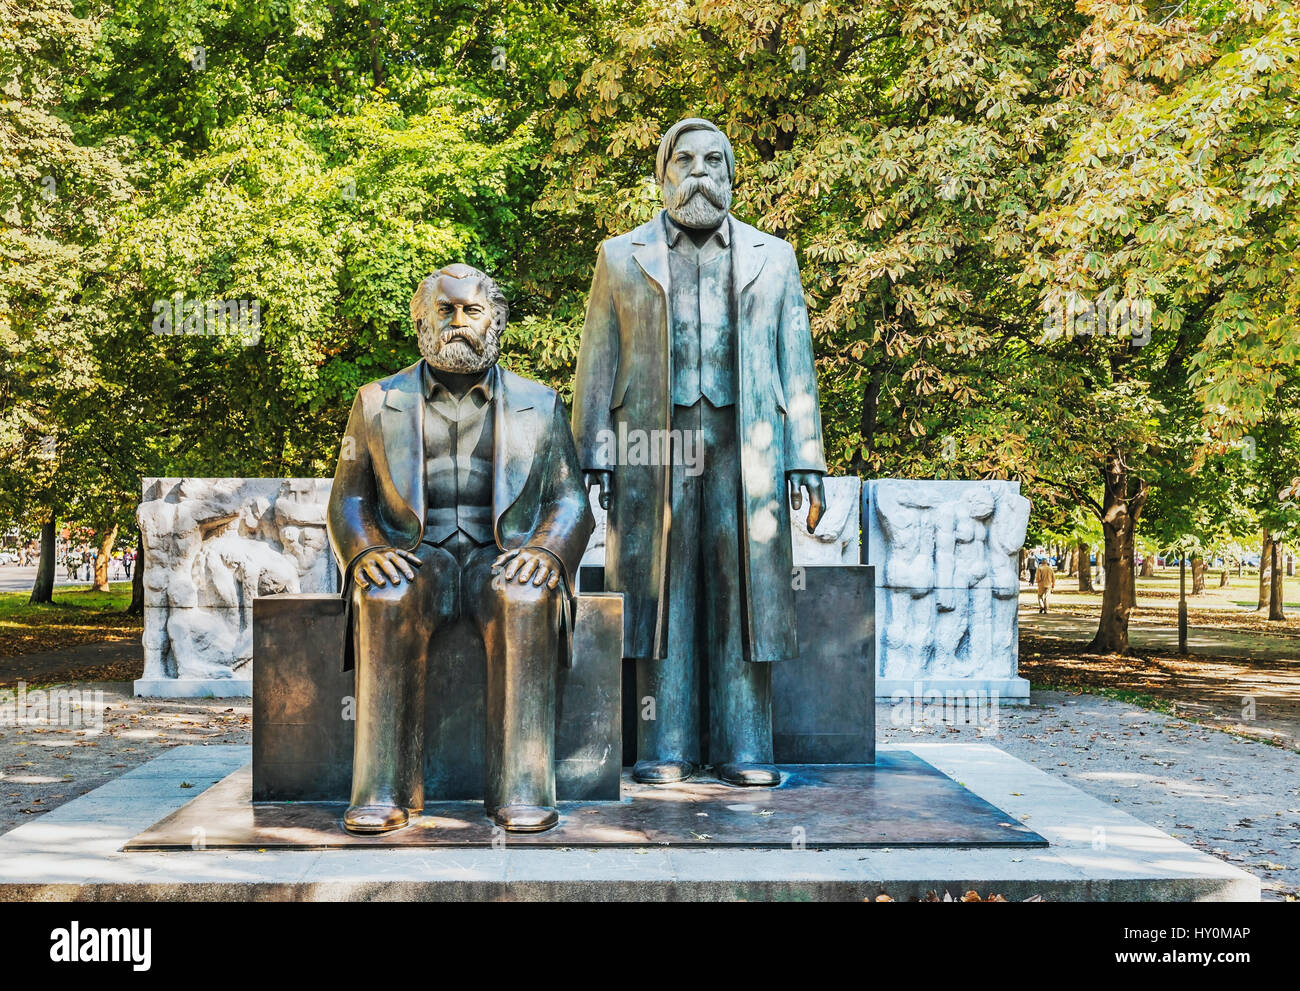 Le monument de Karl Marx et Friedrich Engels est situé dans le Berlin, Germany, Europe Banque D'Images